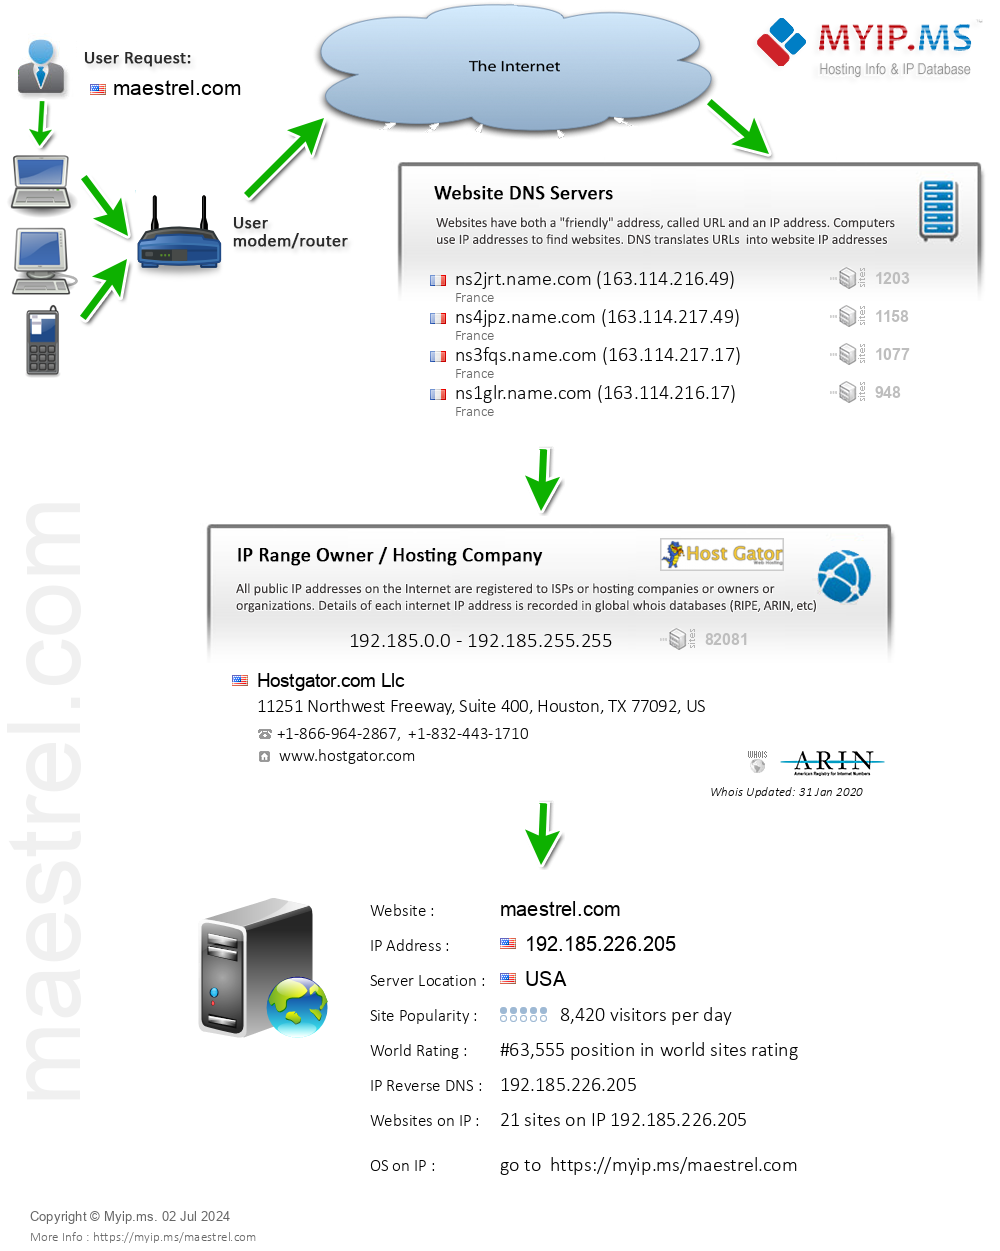 Maestrel.com - Website Hosting Visual IP Diagram